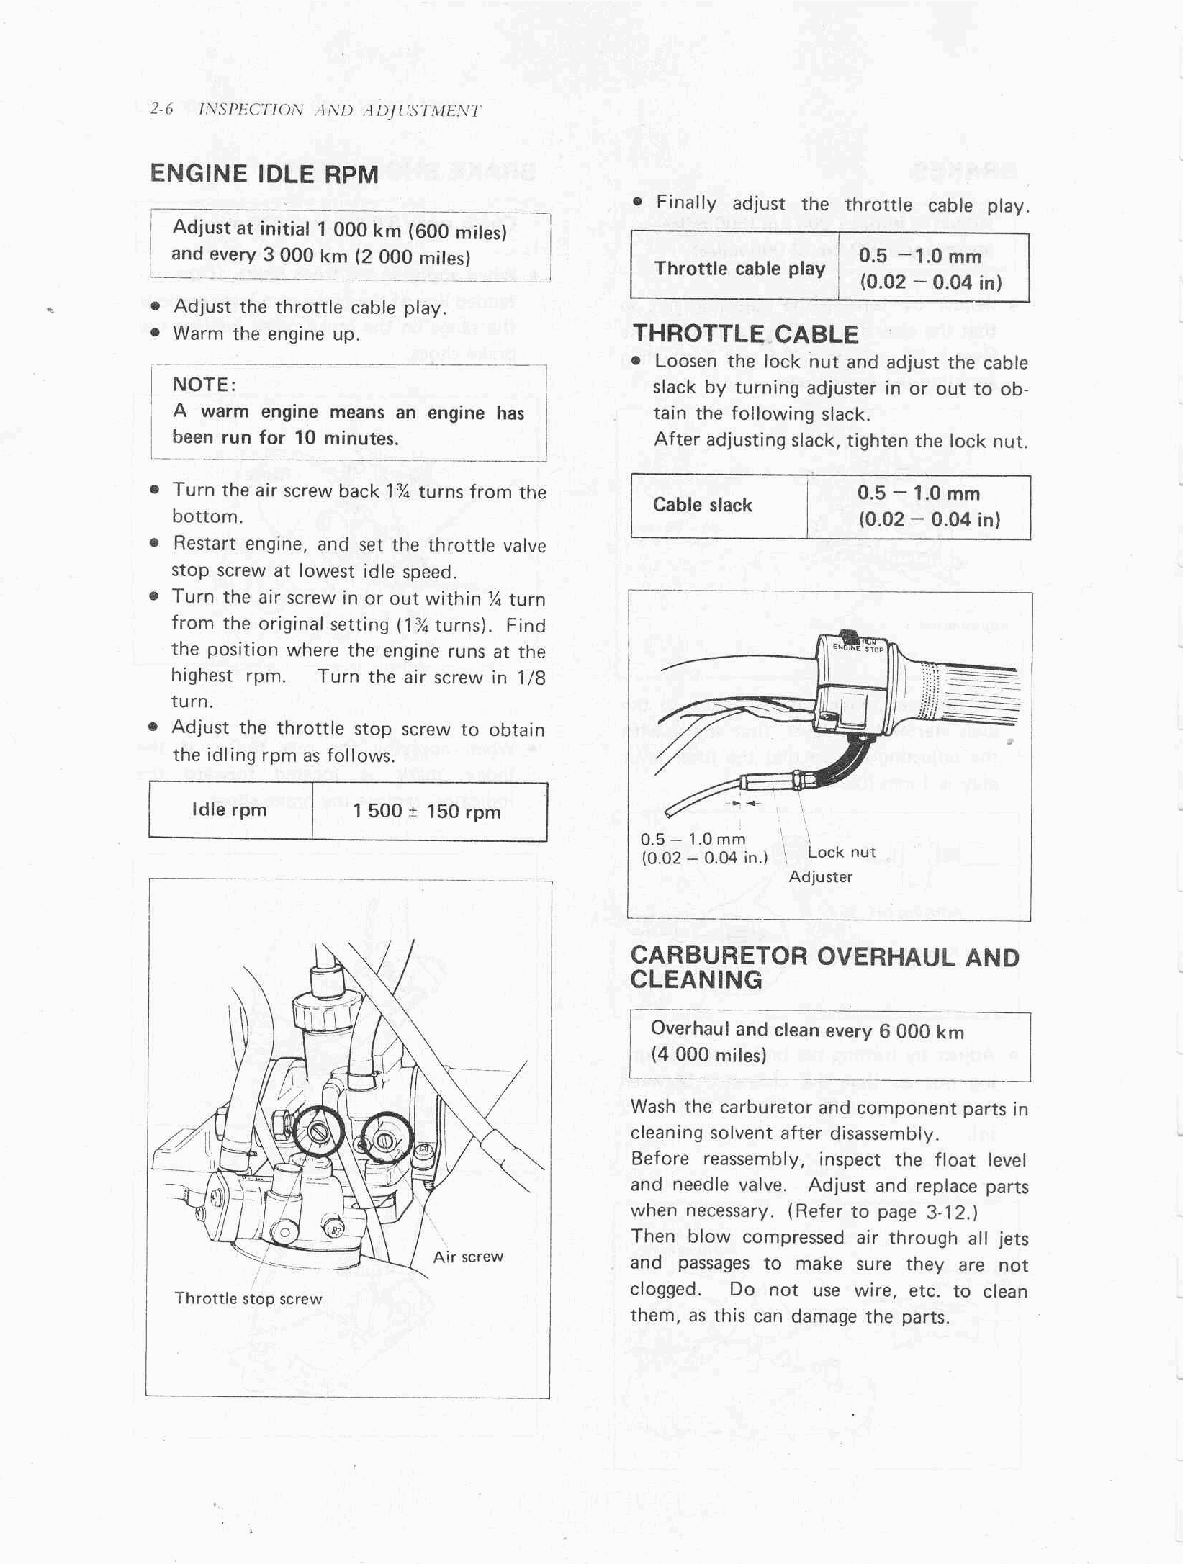 1979-1999 FA50 Moped Service Manual